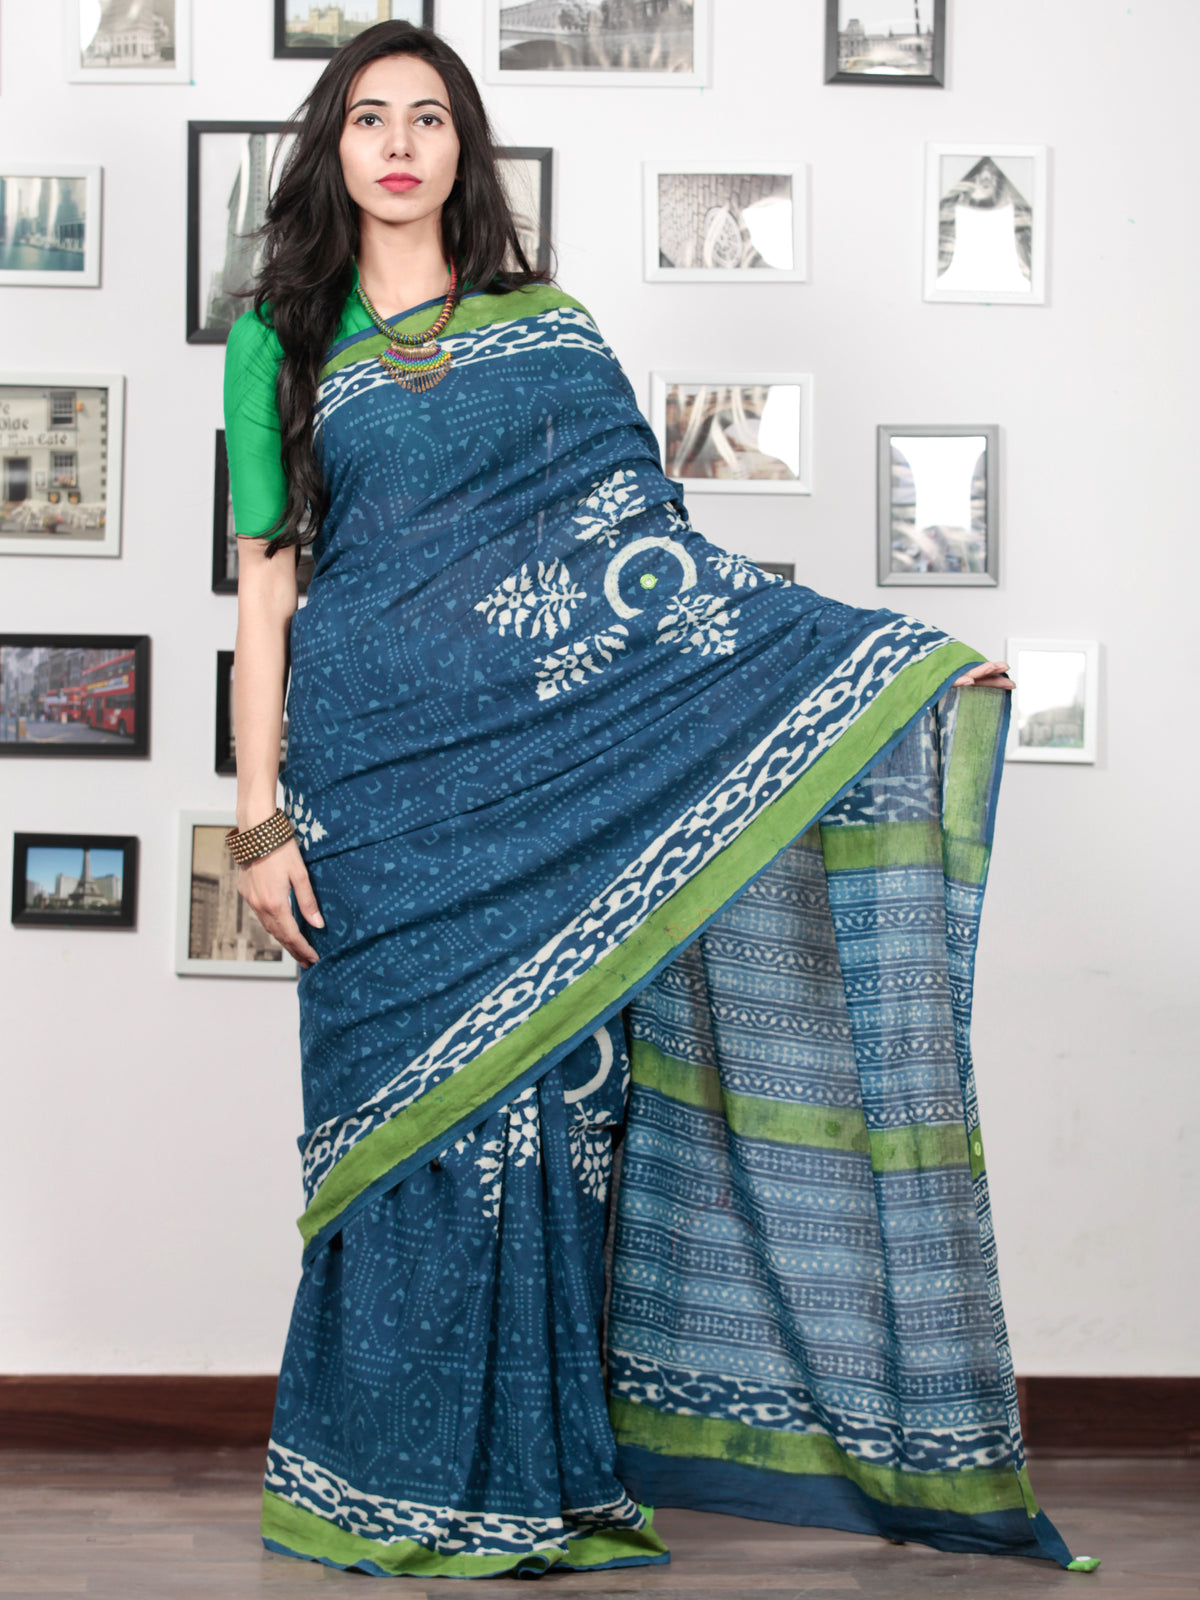 Indigo White Green Hand Block Printed Cotton Mul Saree With Tassels & Mirror Work - S031703020